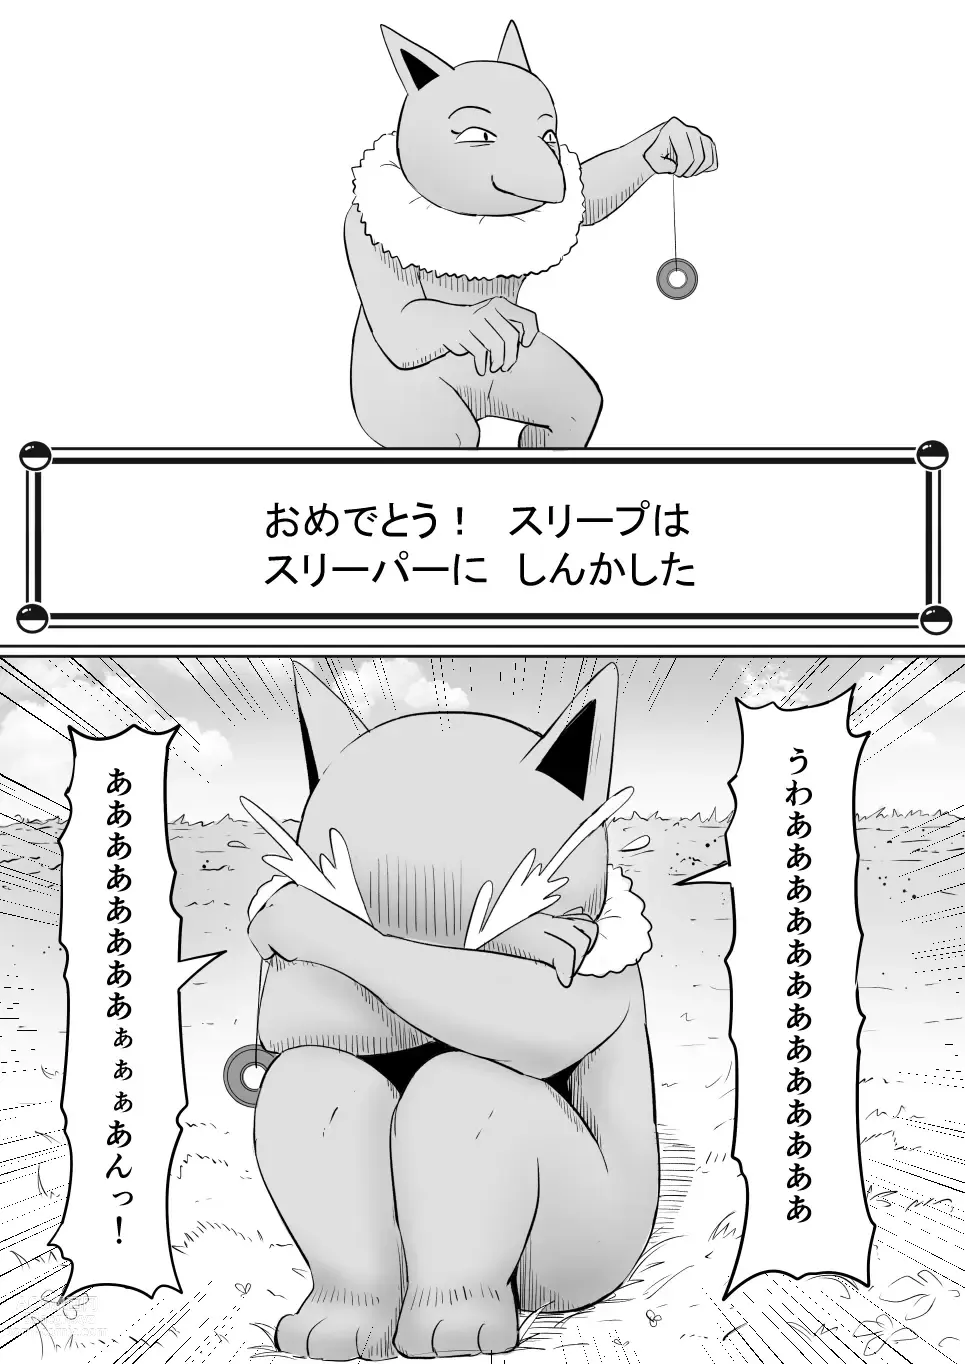 Page 9 of doujinshi Koi o Shita Sleeper-chan.